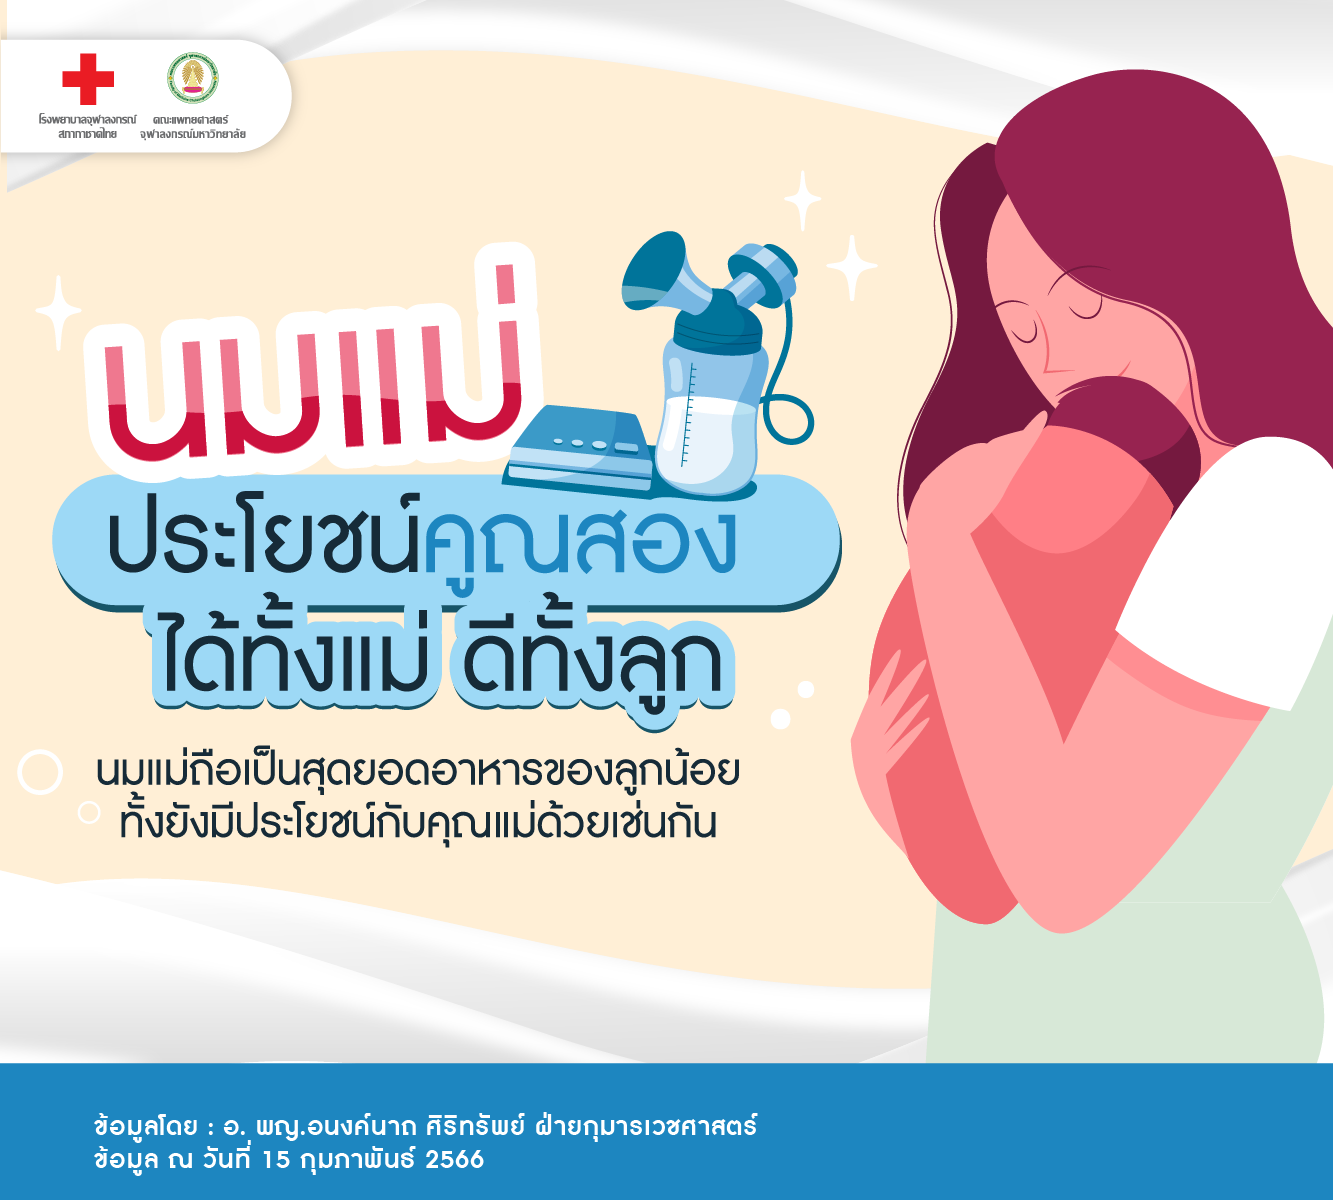 นมแม่ ประโยชน์คูณสอง ได้ทั้งแม่ ดีทั้งลูก - โรงพยาบาลจุฬาลงกรณ์ สภากาชาดไทย